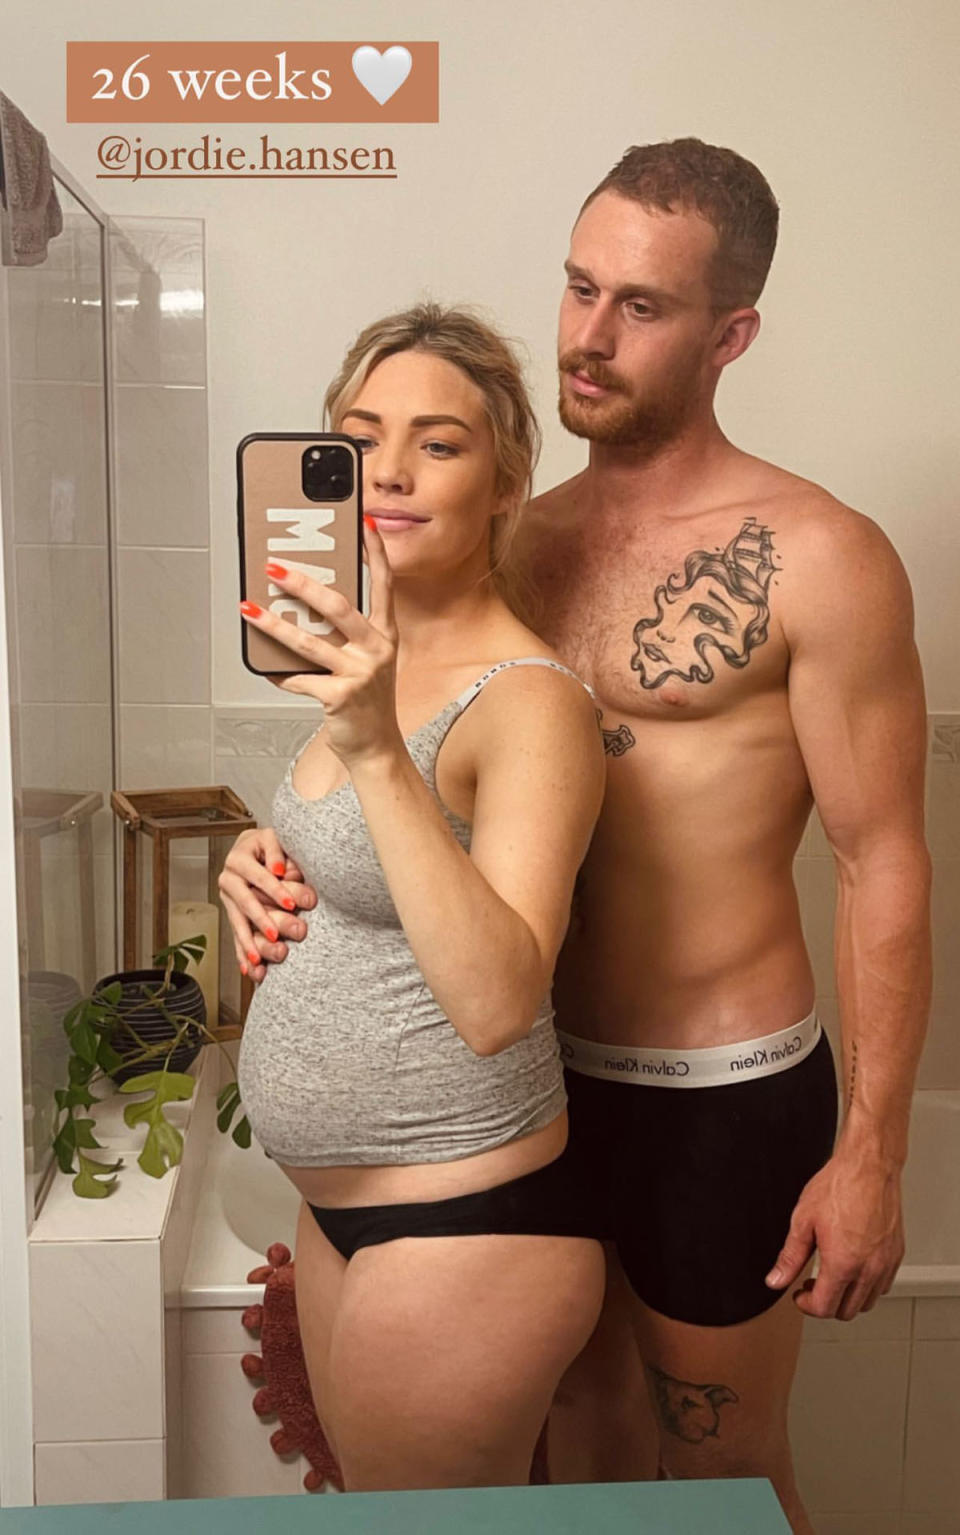 Sam Frost and Jordie Hansen take a mirror snap in their underwear showing off Sam's 26 week baby bump